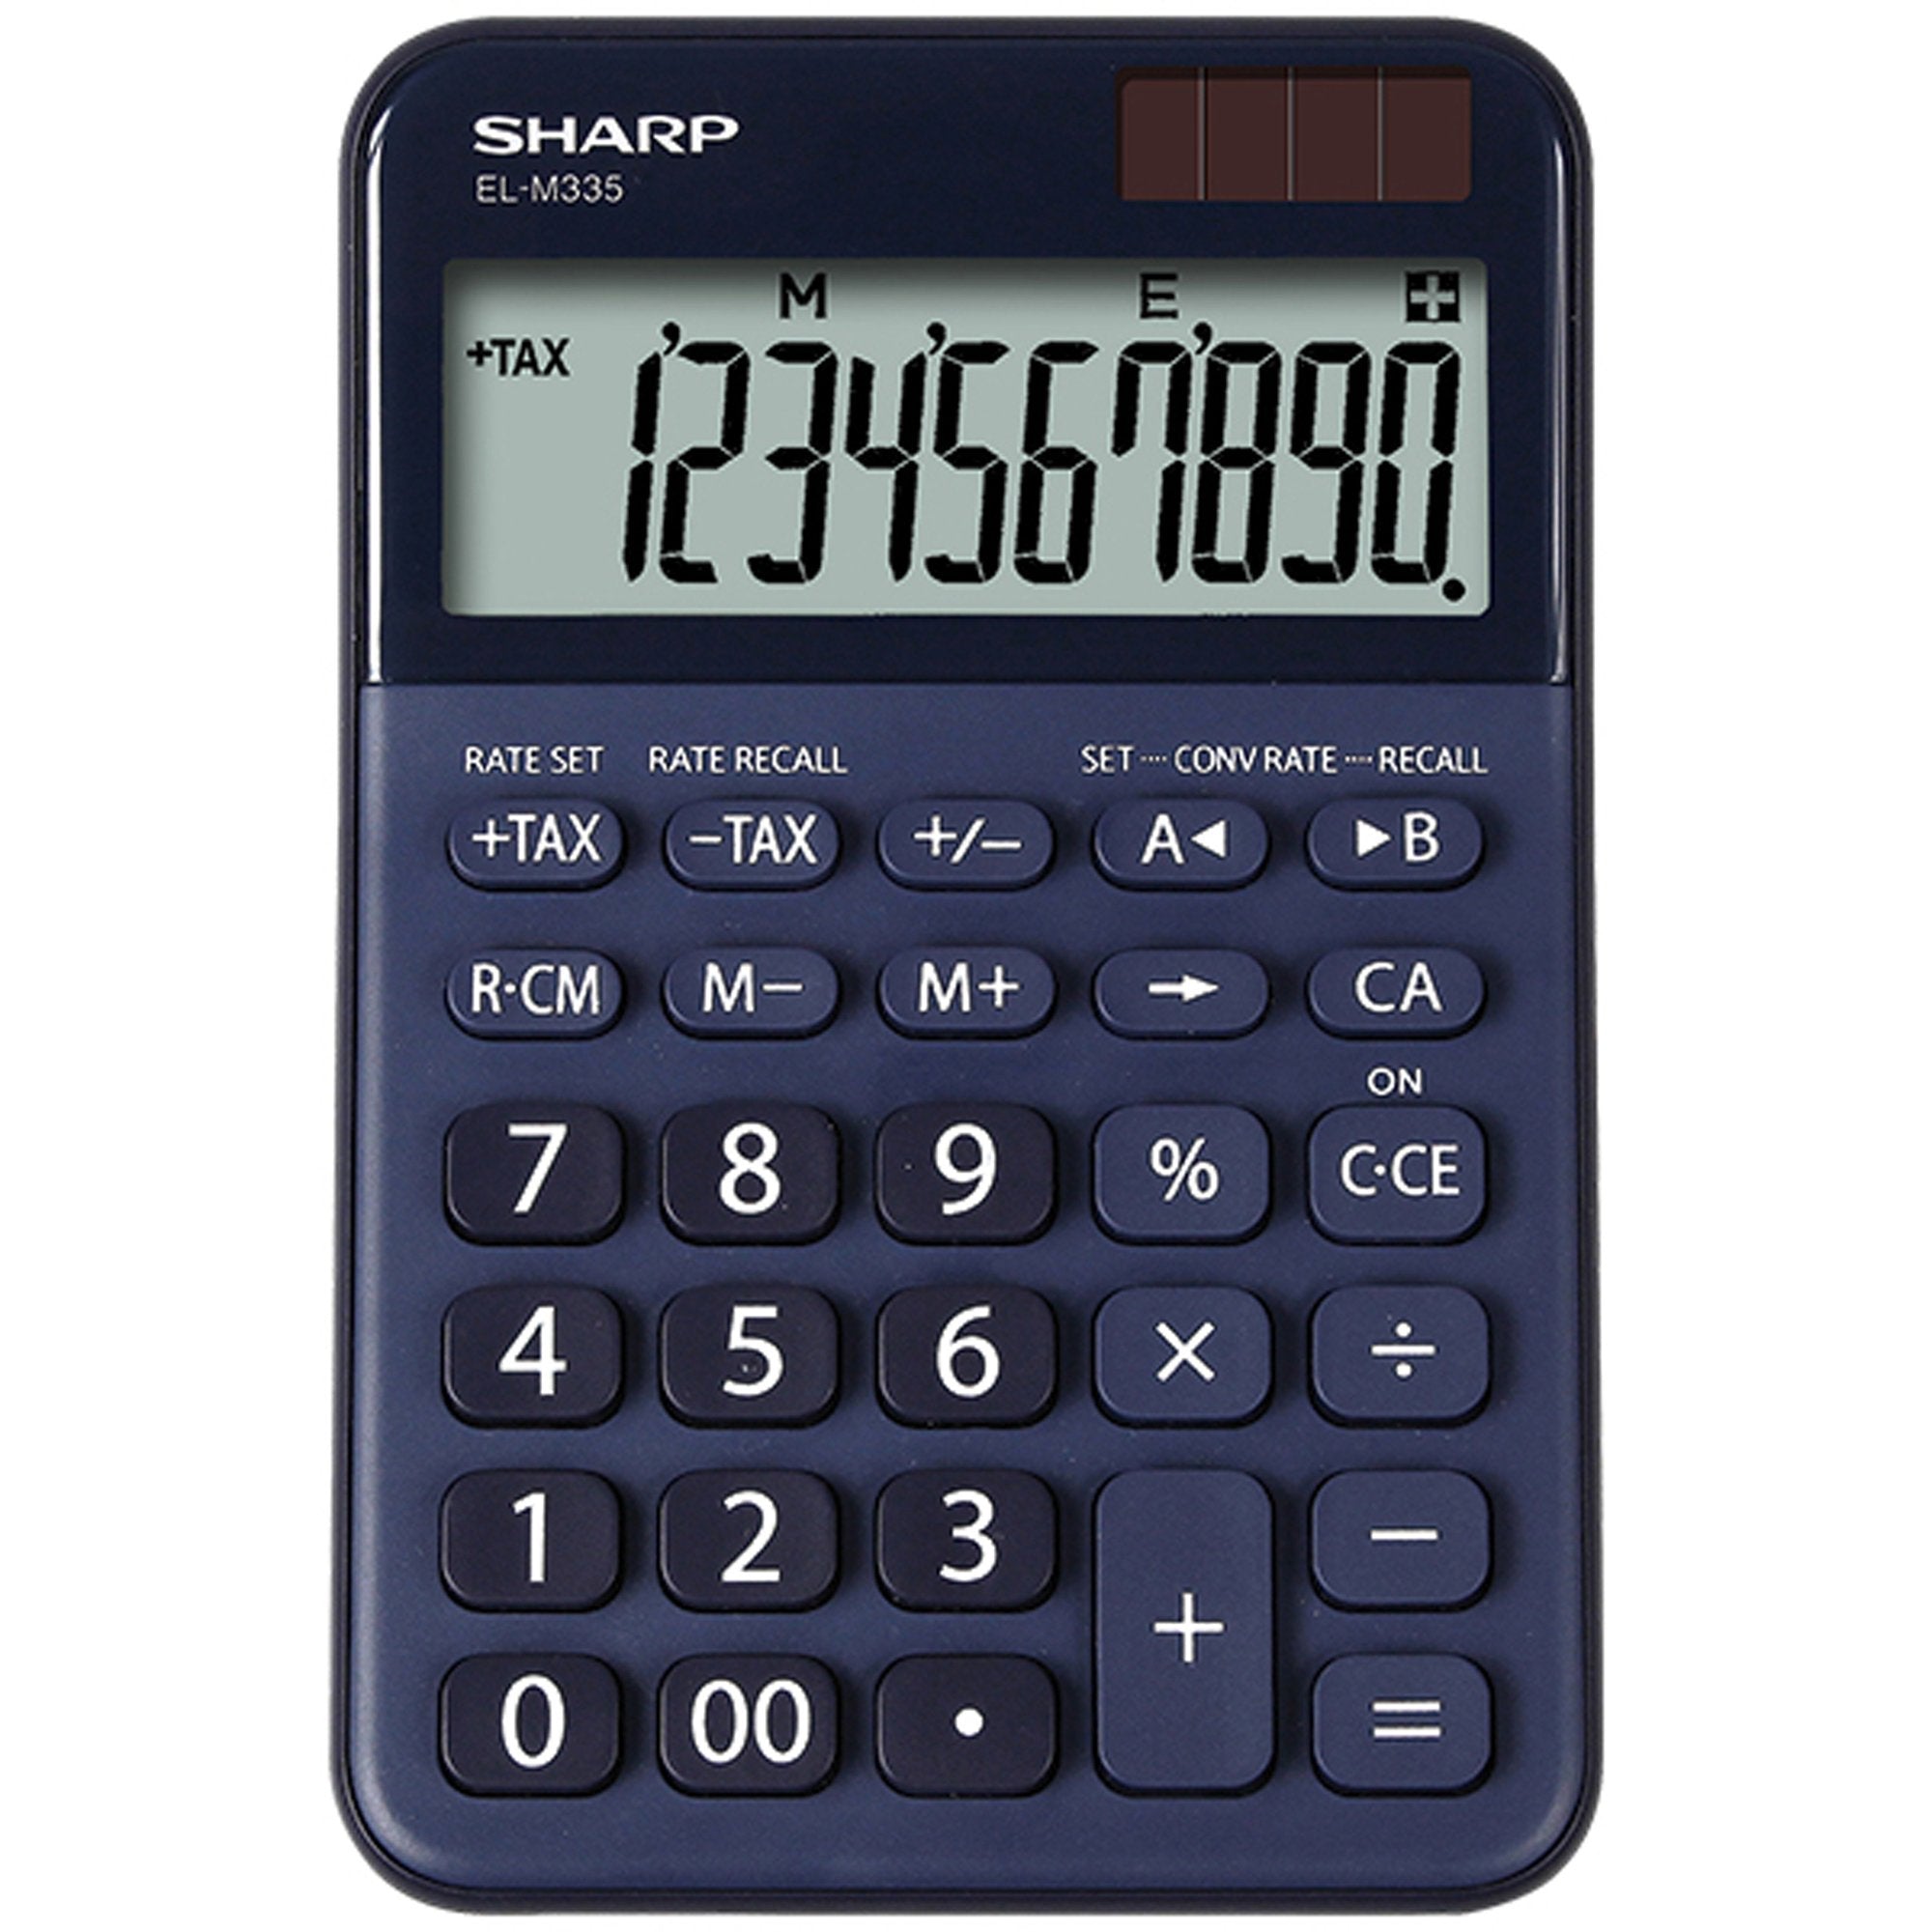 sharp-calcolatrice-tavolo-el-m335-10-cifre-colore-blu